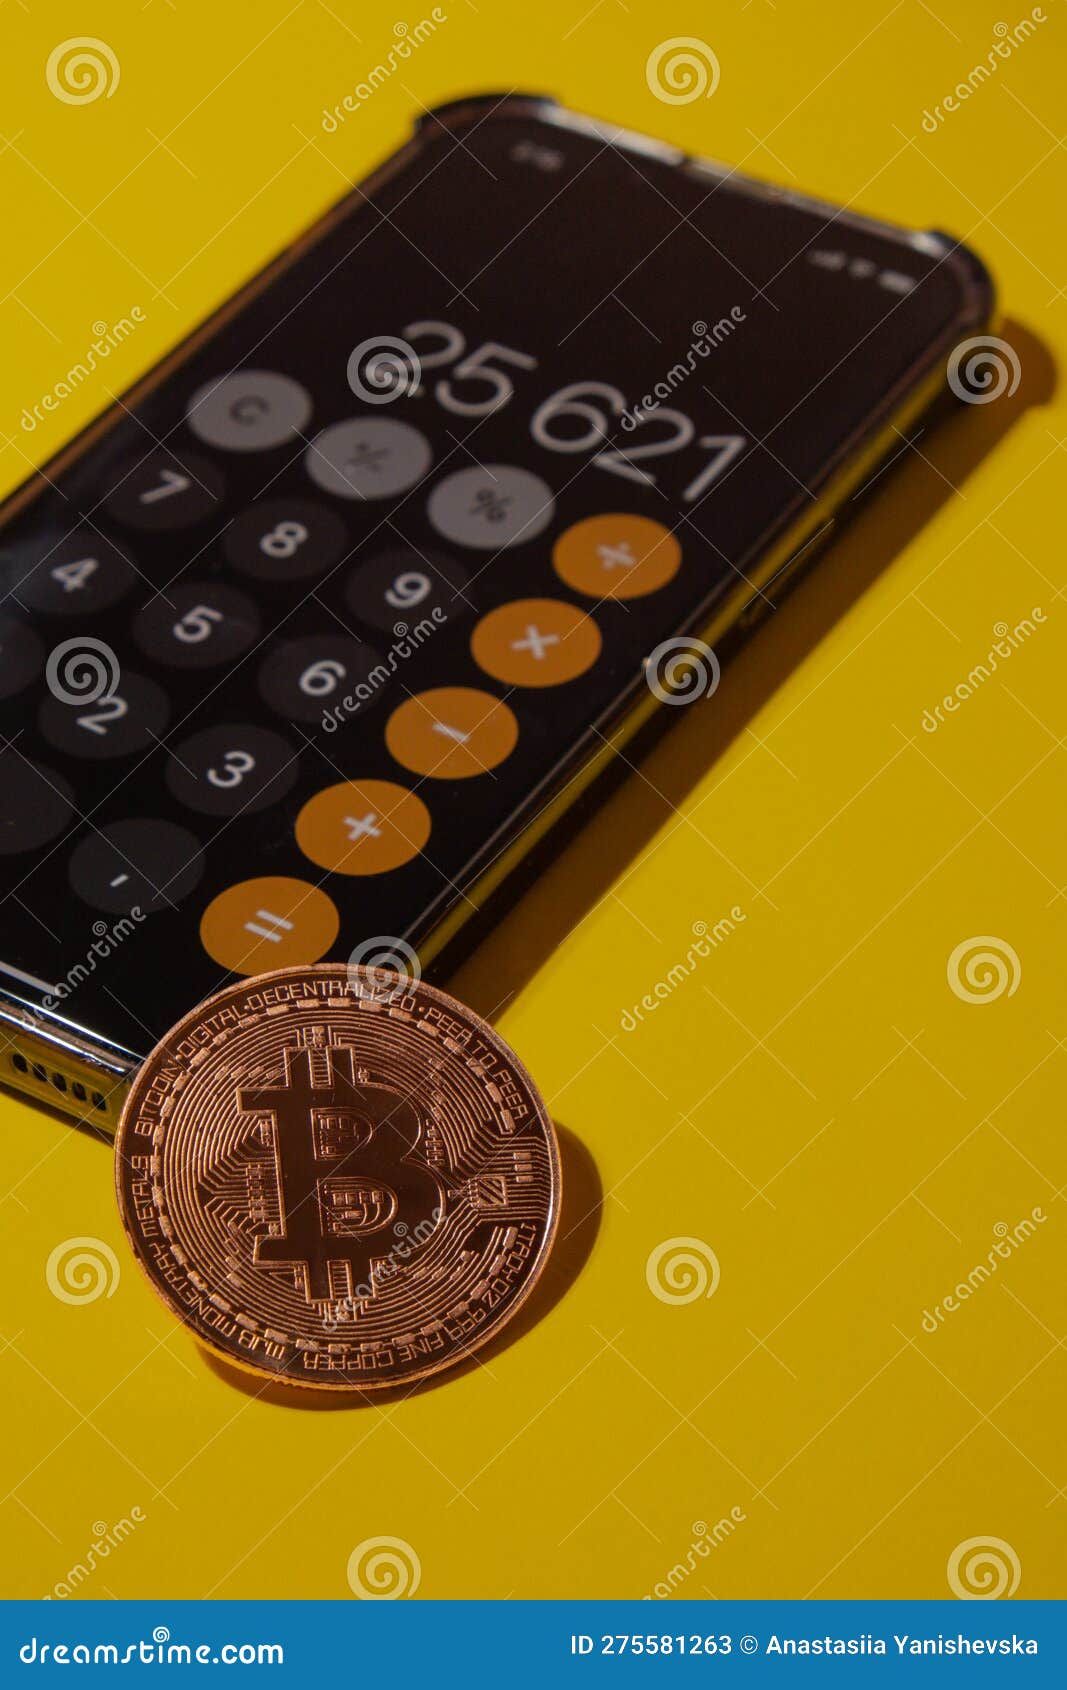 Bitcoin Calculator for Gold